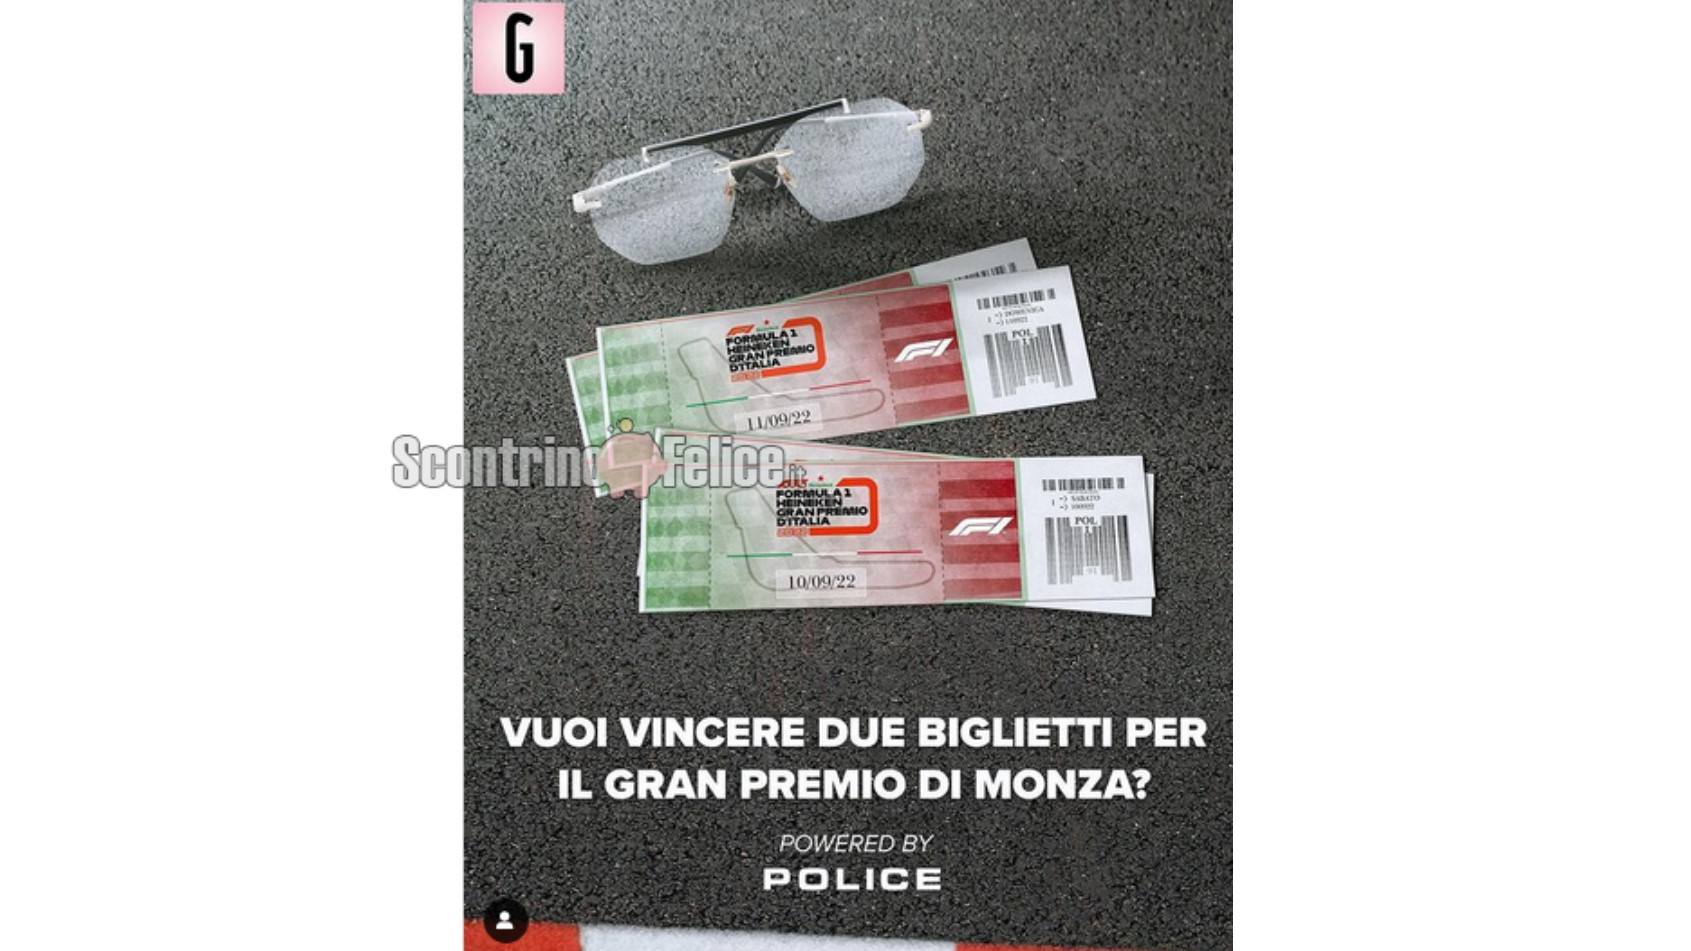 Concorso gratuito La Gazzetta Dello Sport: vinci 2 biglietti per il Gran Premio di Monza e 1 paio di occhiali Police